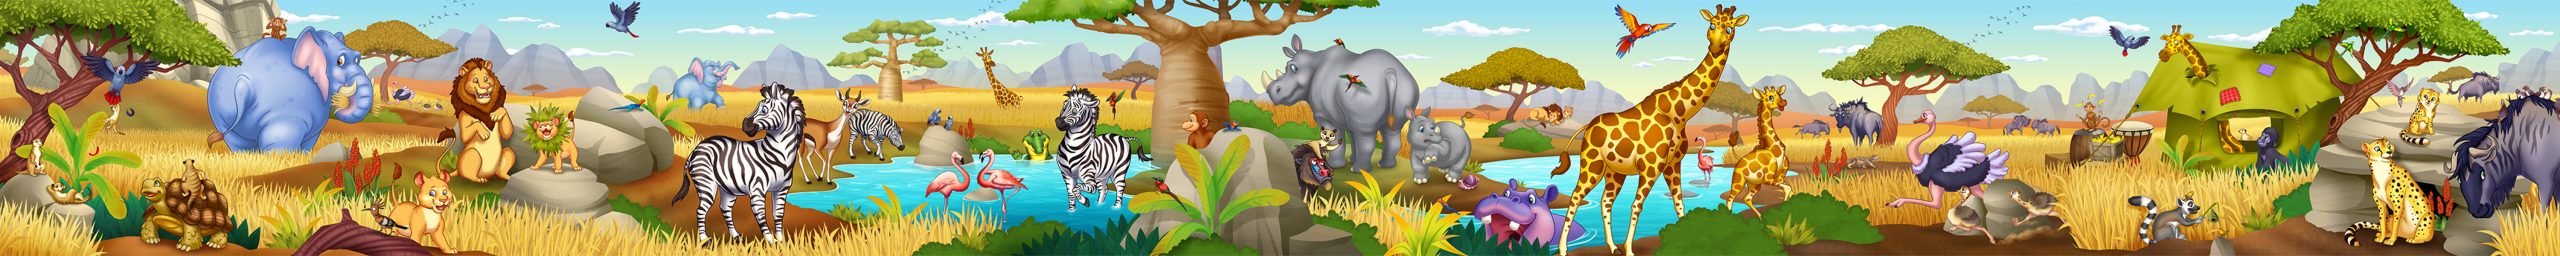 KidsMural-Safari1